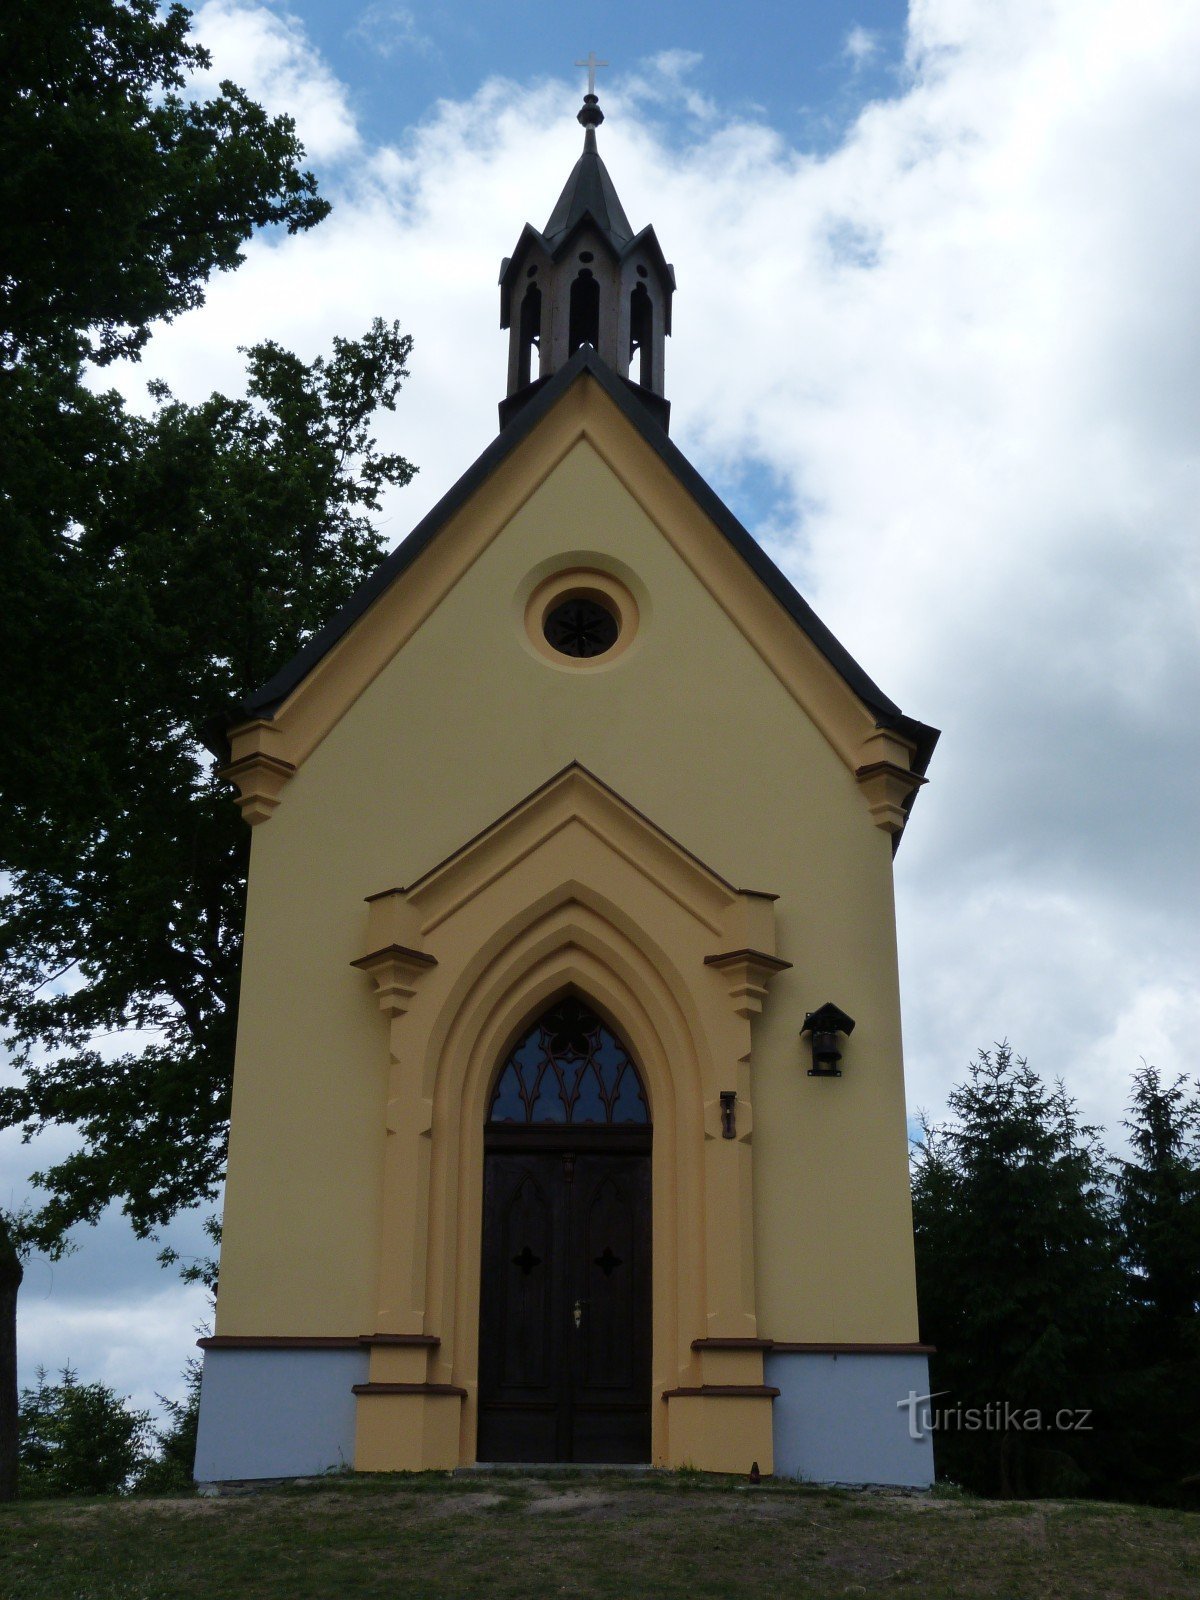 圣玛格丽特教堂